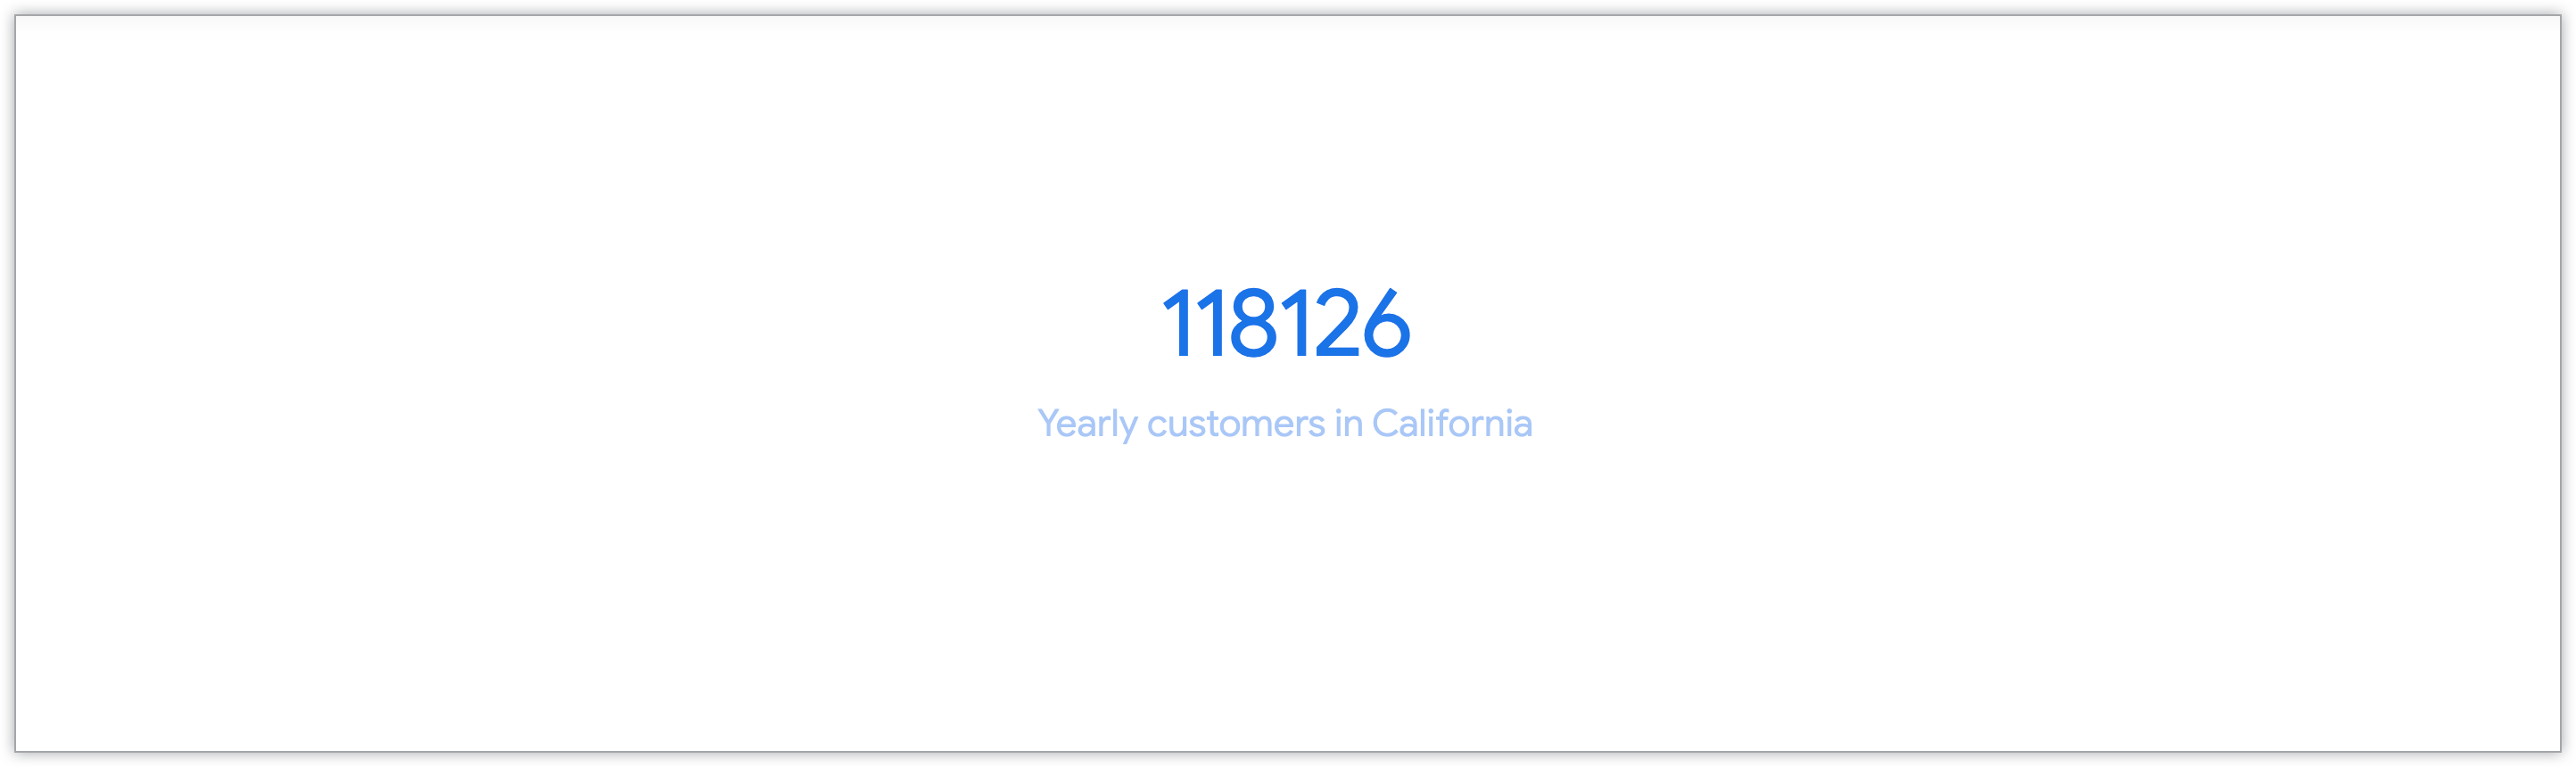 Grafico a valore singolo che mostra il numero di clienti annuali della California.